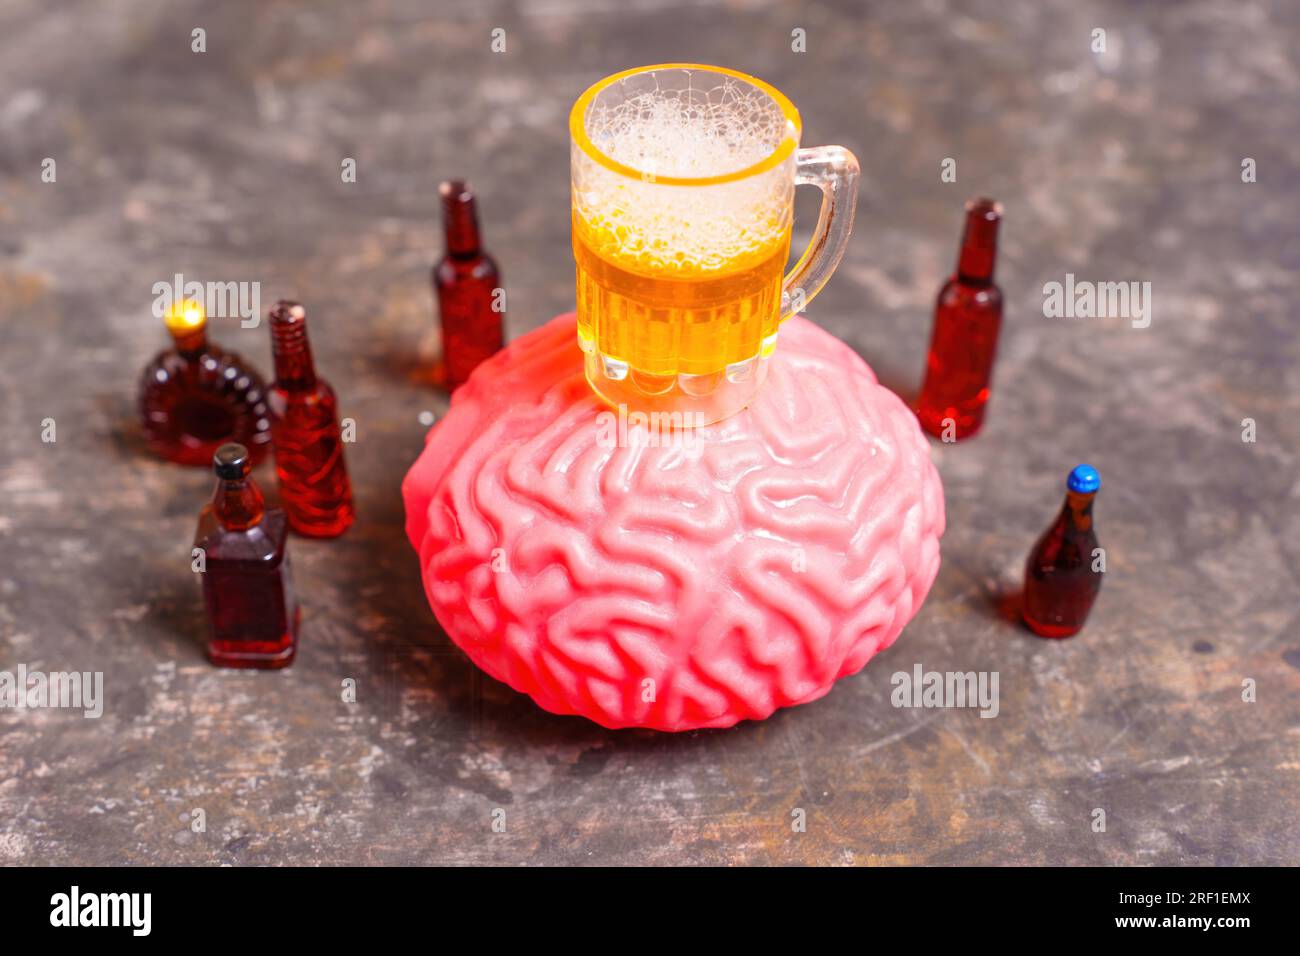 Un bicchiere da birra giocattolo posto sopra un modello di cervello umano circondato da una selezione di liquori e bottiglie di birra. Rompere il circolo vizioso di stress e alcoholi Foto Stock